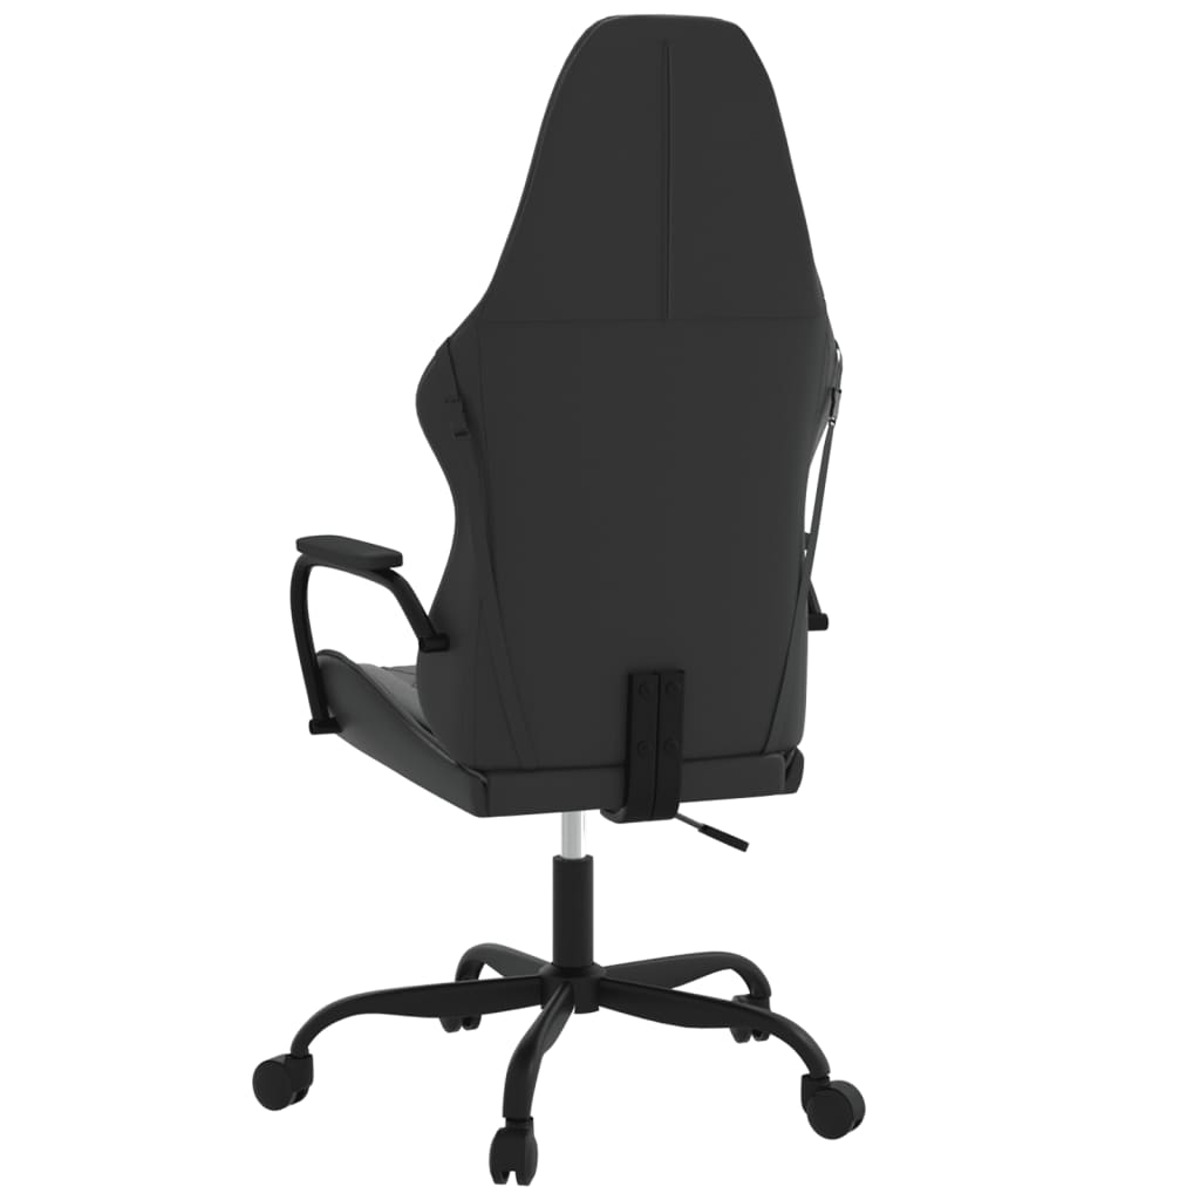 VIDAXL 345537 Gaming Stuhl, Grau Schwarz und